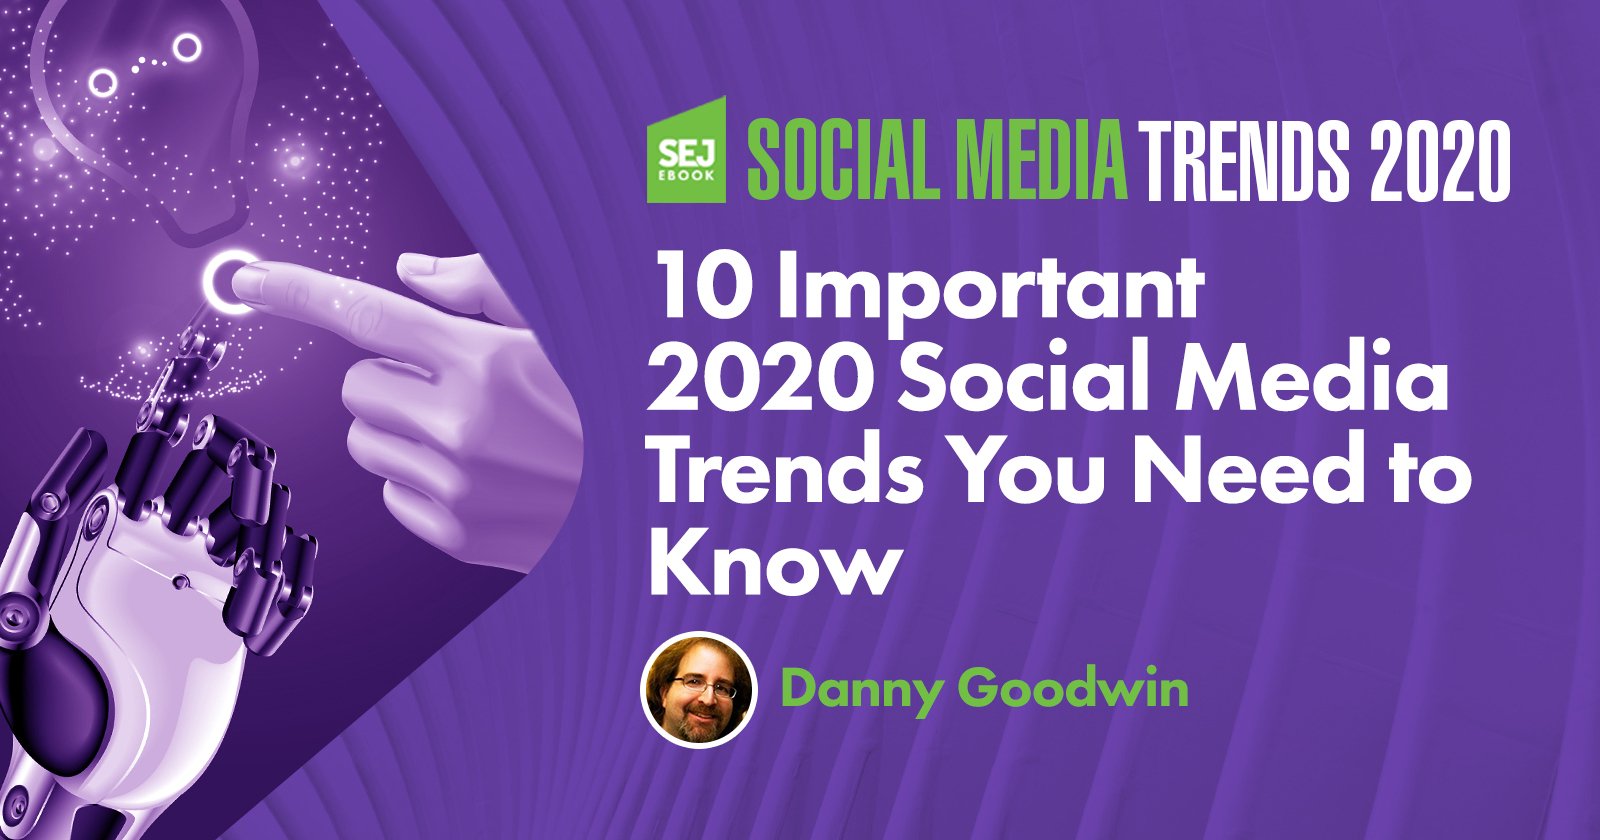 10 xu hướng social media marketing quan trọng trong năm 2020 bạn cần nắm